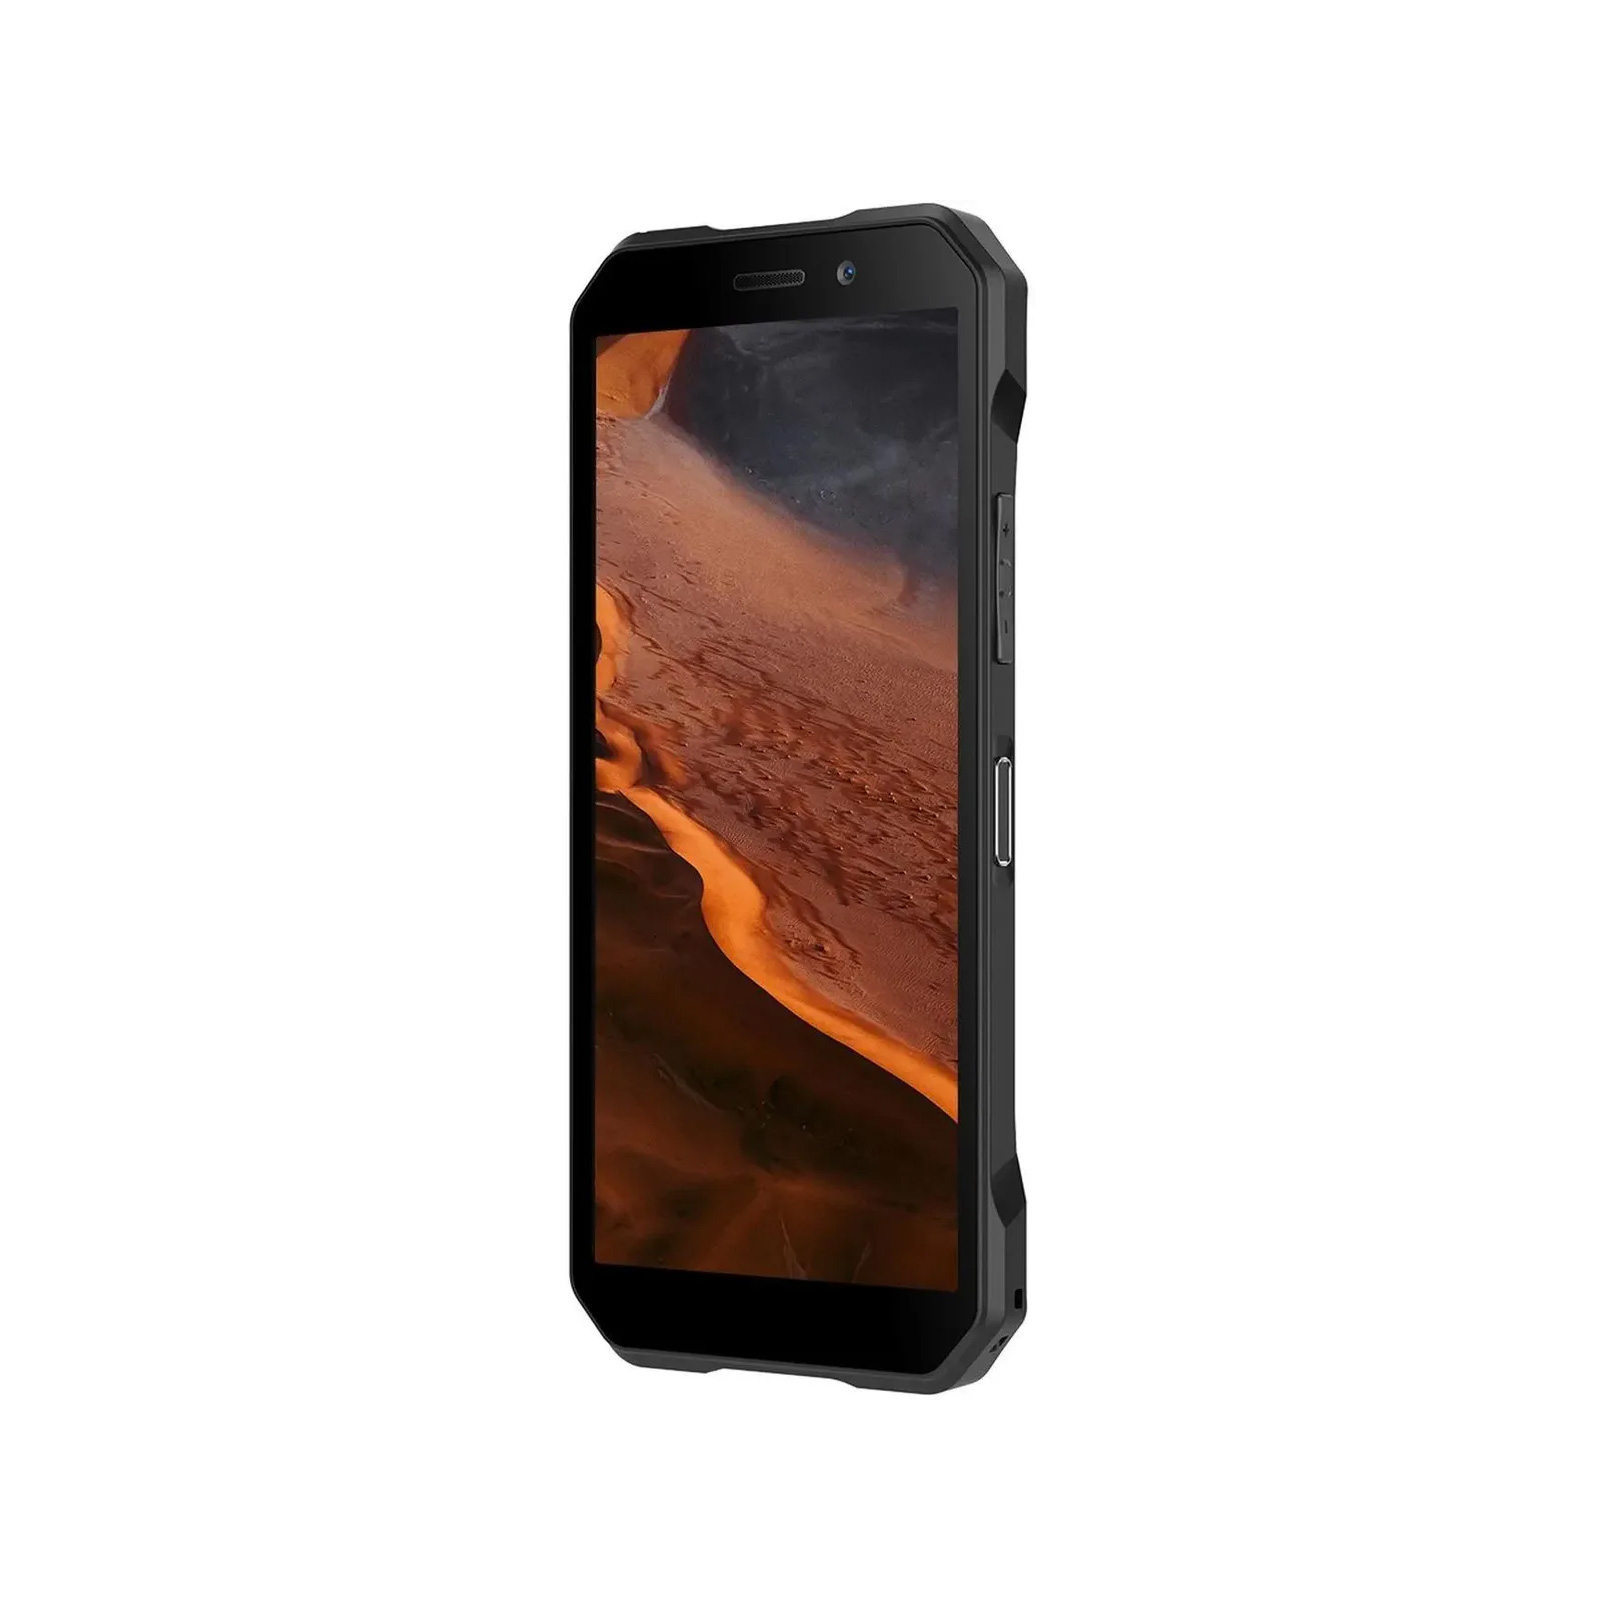 Мобільний телефон Doogee S61 Pro 8/128GB Transparent/Black зображення 9